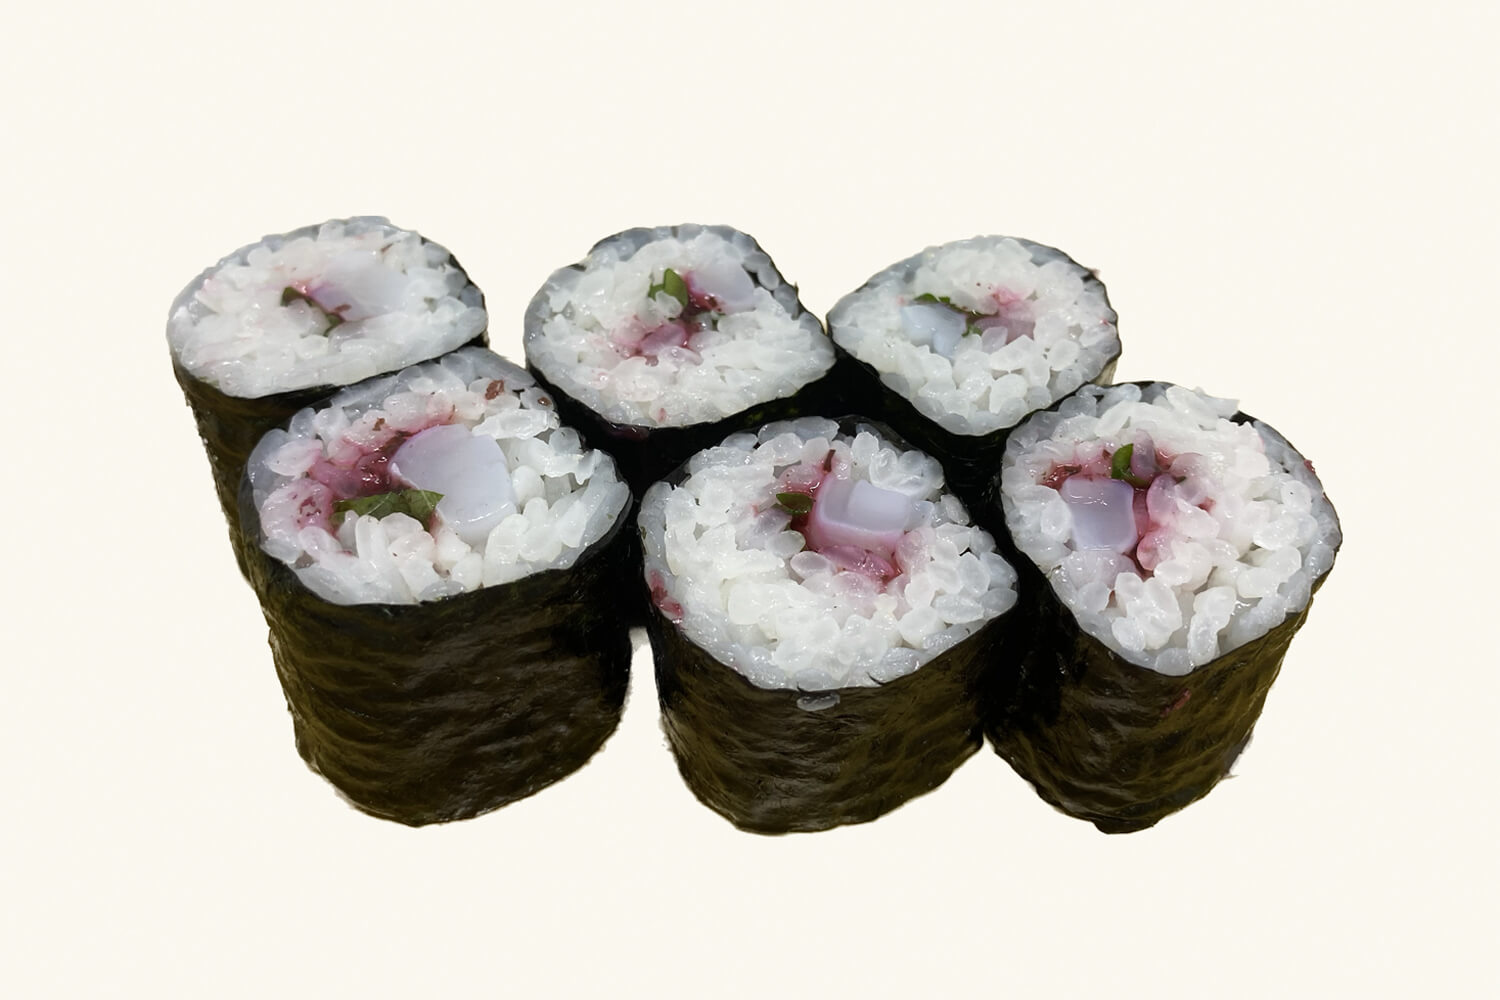 Edokko Nigiri Sushi Menu